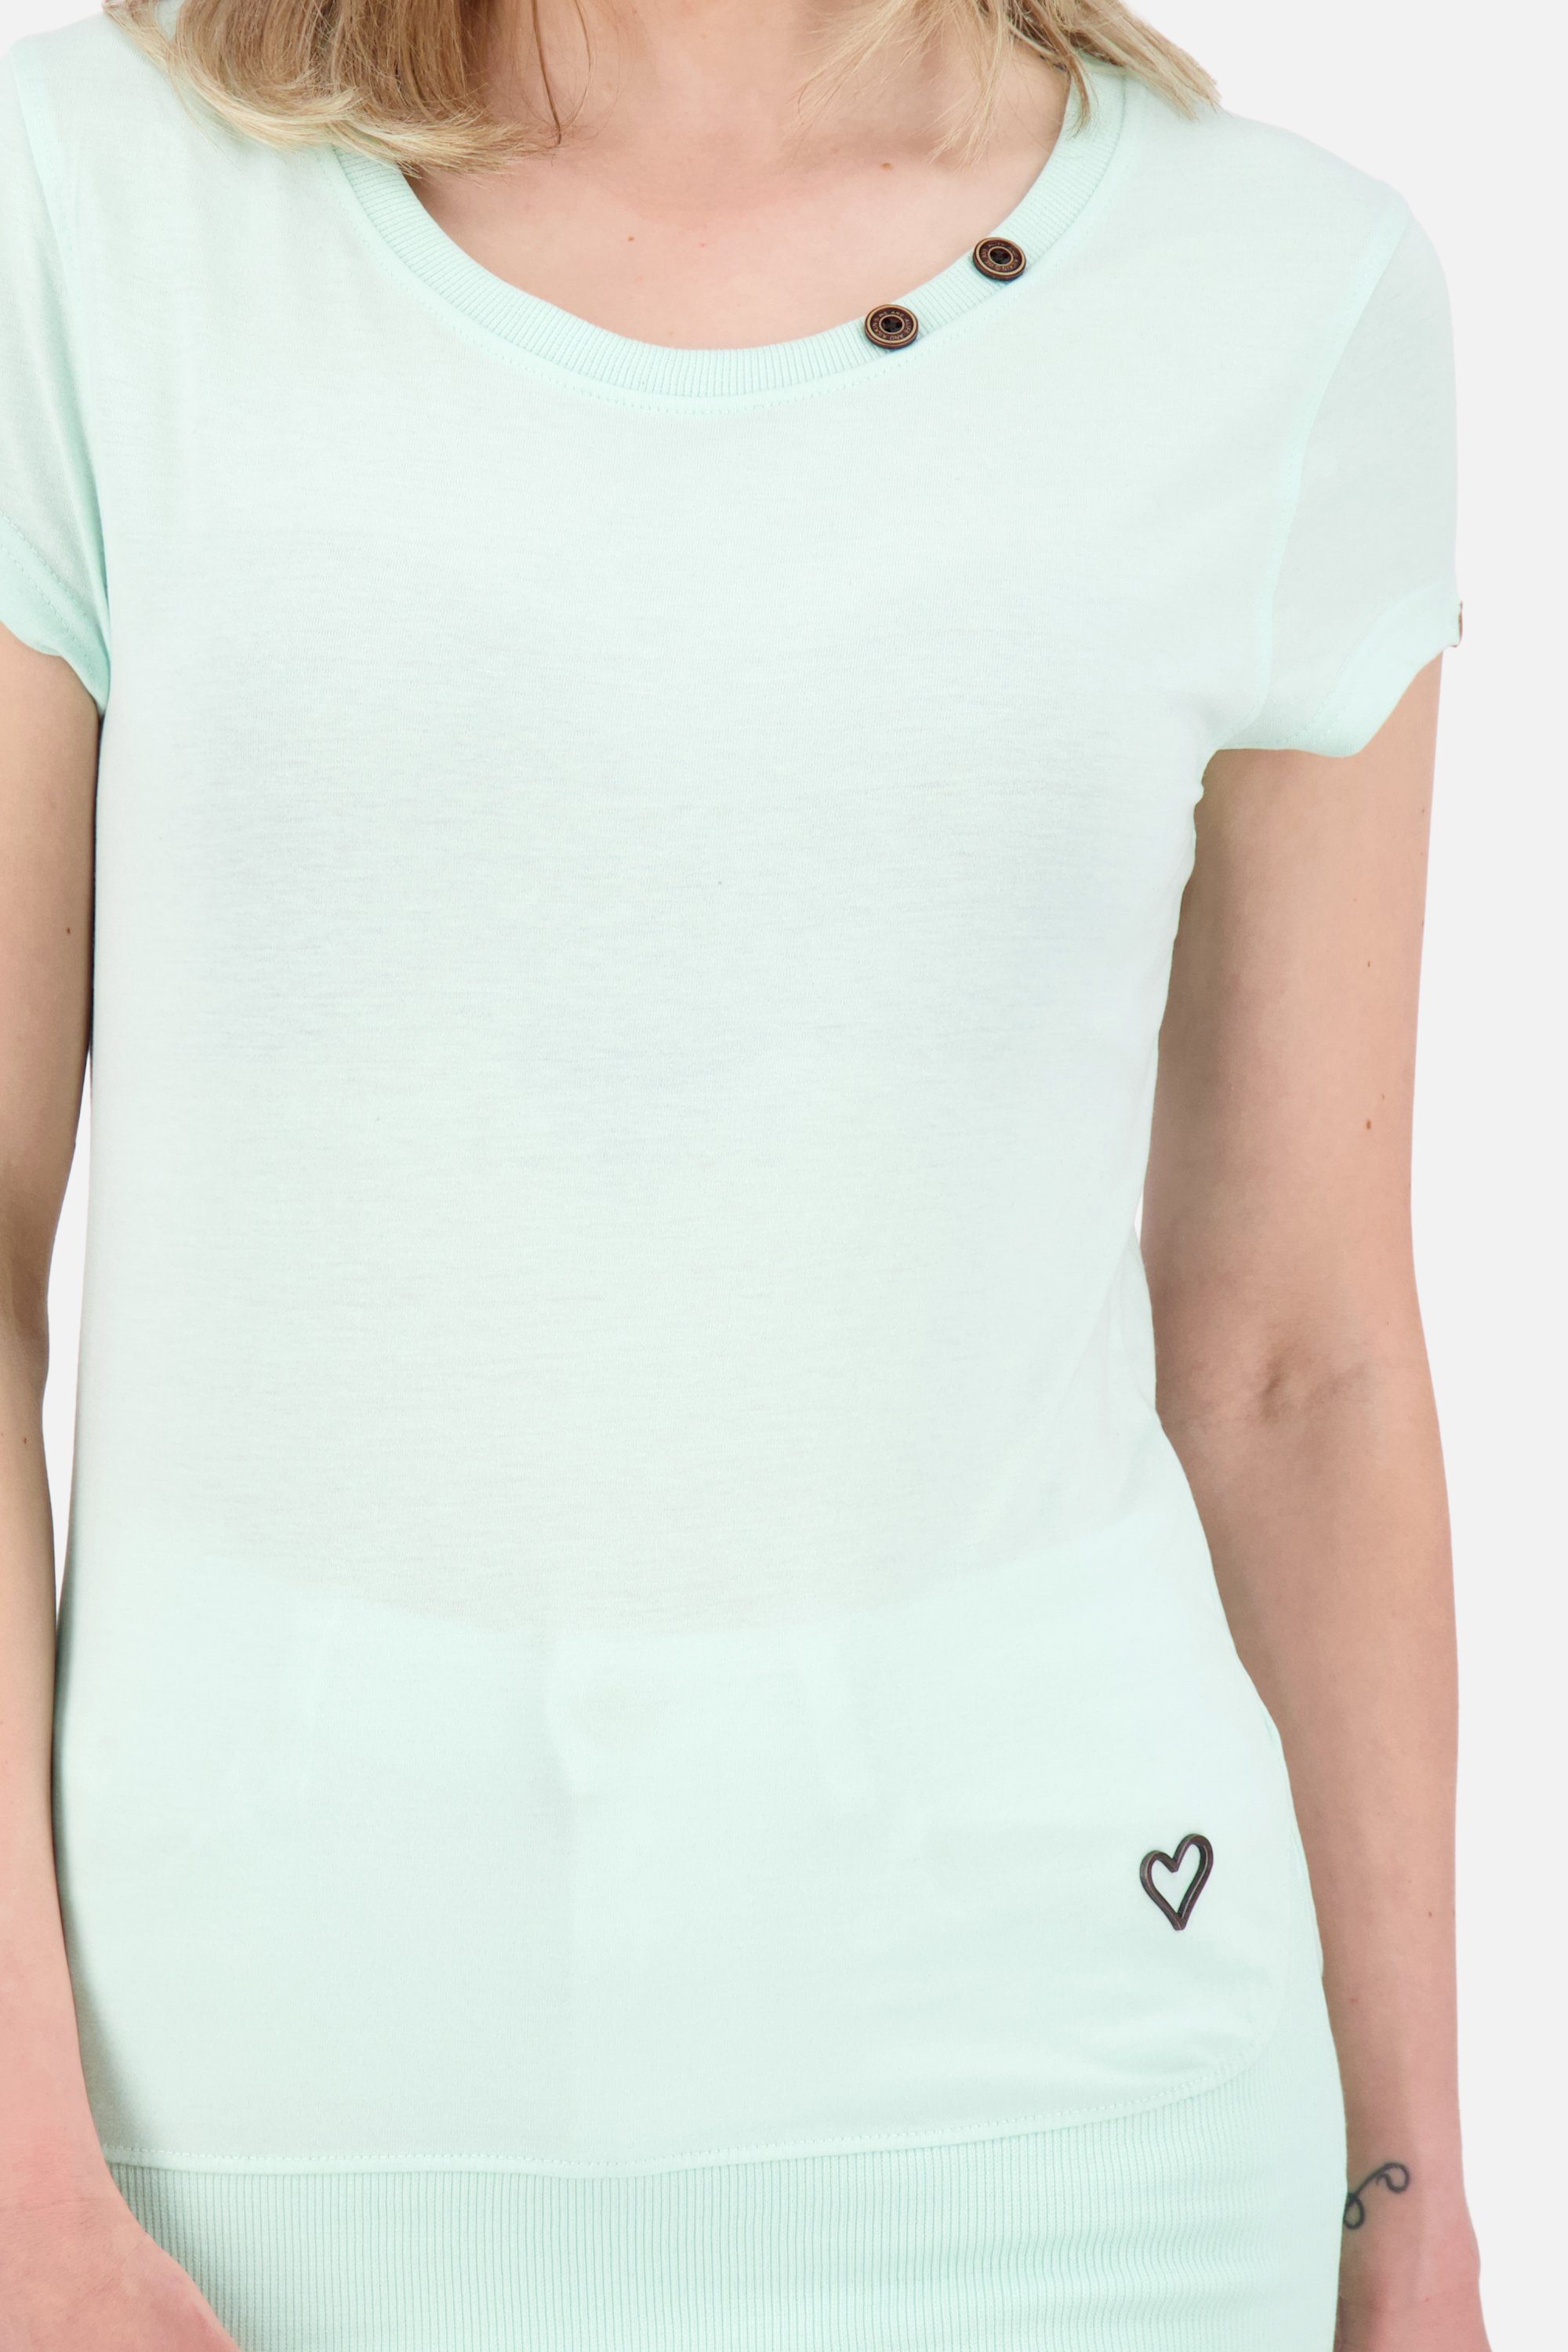 Alife & Shirt Damen Shirt melange A Kickin Rundhalsshirt Kurzarmshirt, CocoAK mint